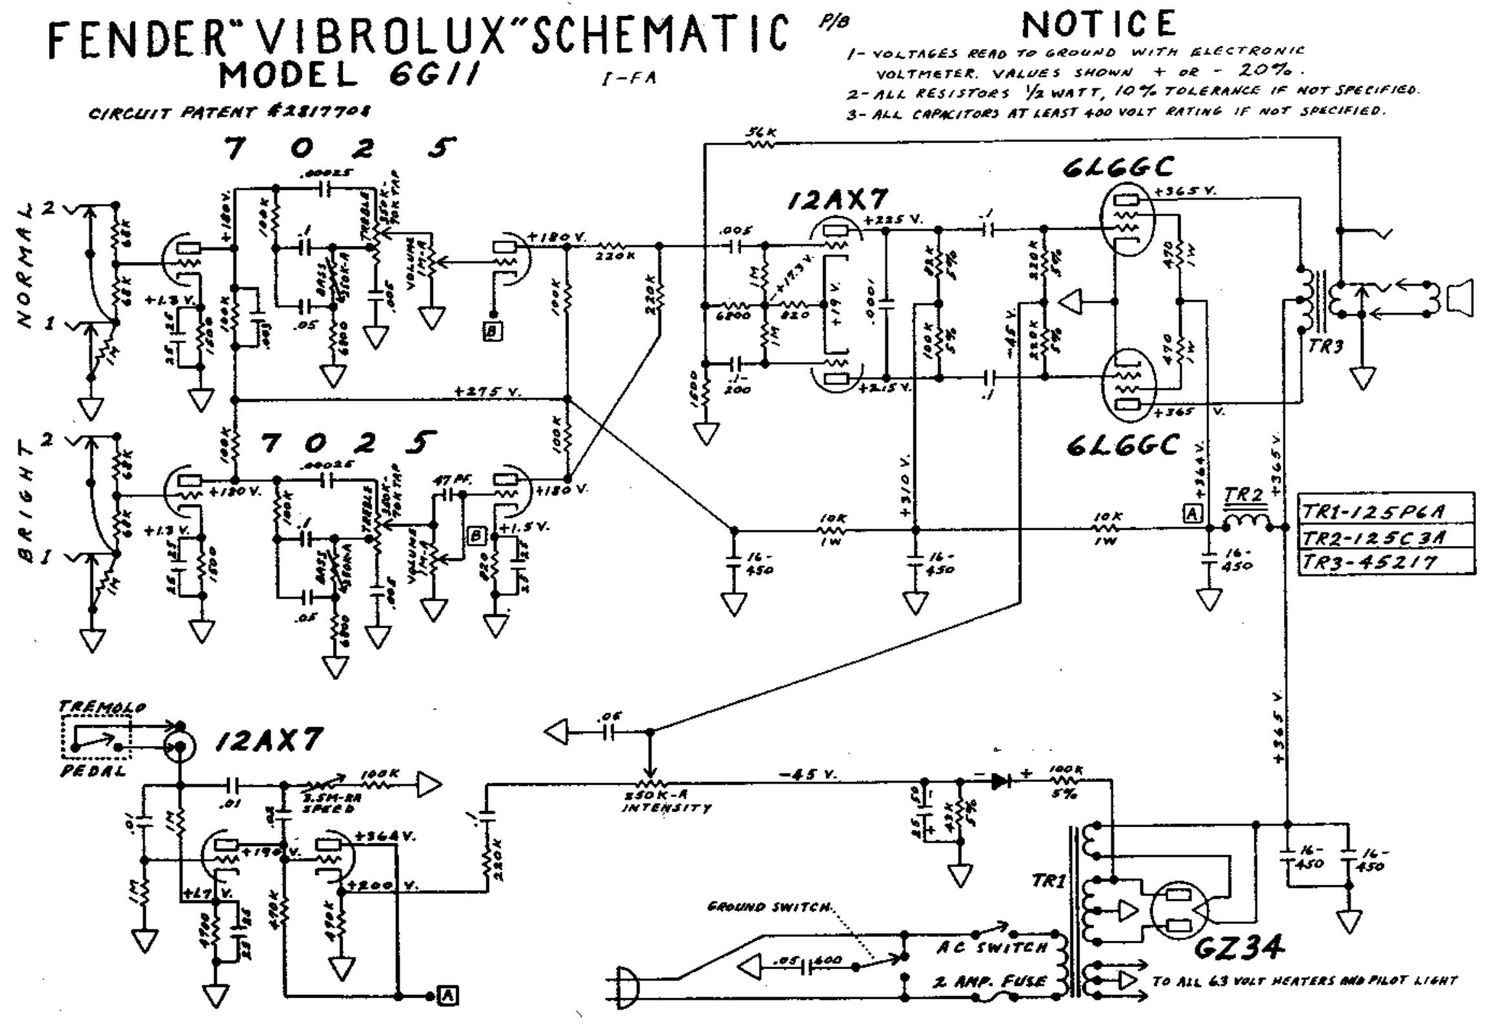 fender vibrolux 6g11 schematic